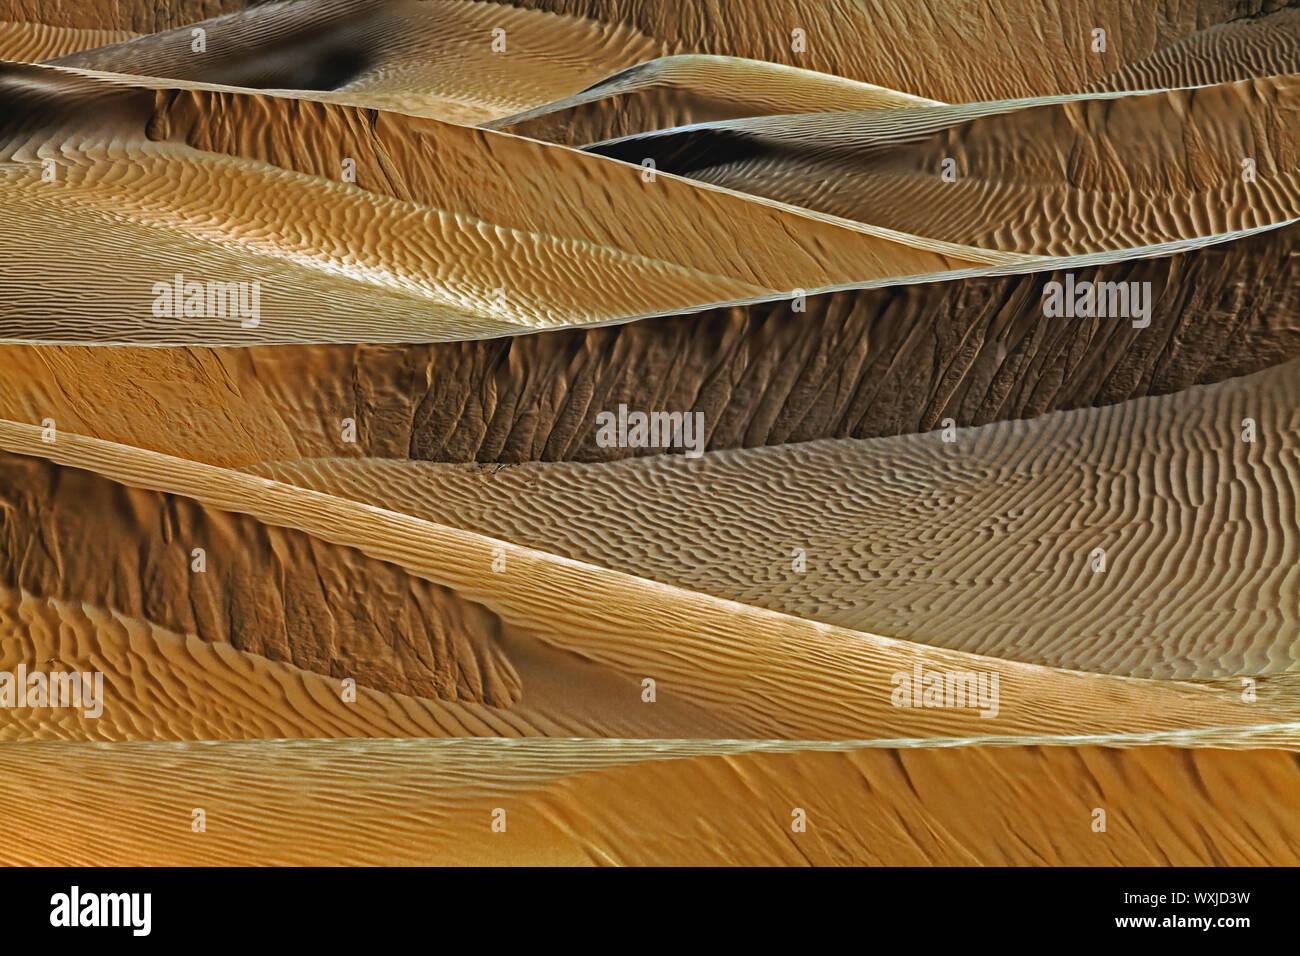 Sanddünen in der Wüste, Saudi-Arabien Stockfoto